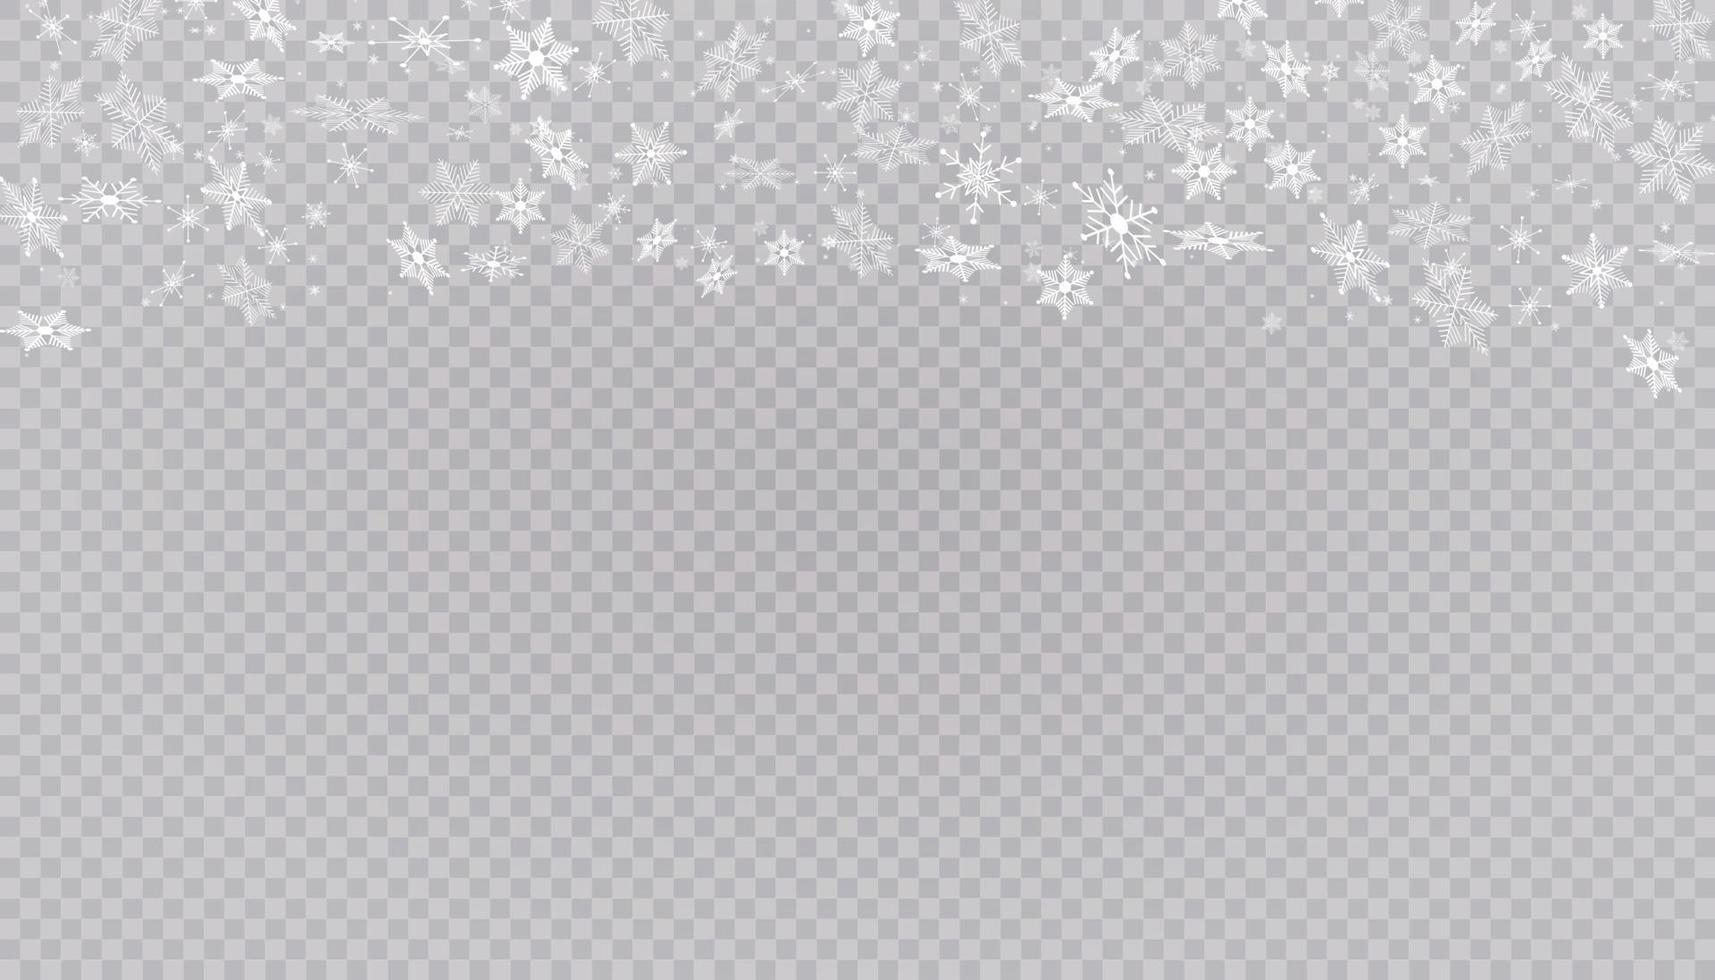 la neige blanche vole fond. flocons de neige de Noël. illustration de fond hiver blizzard. vecteur